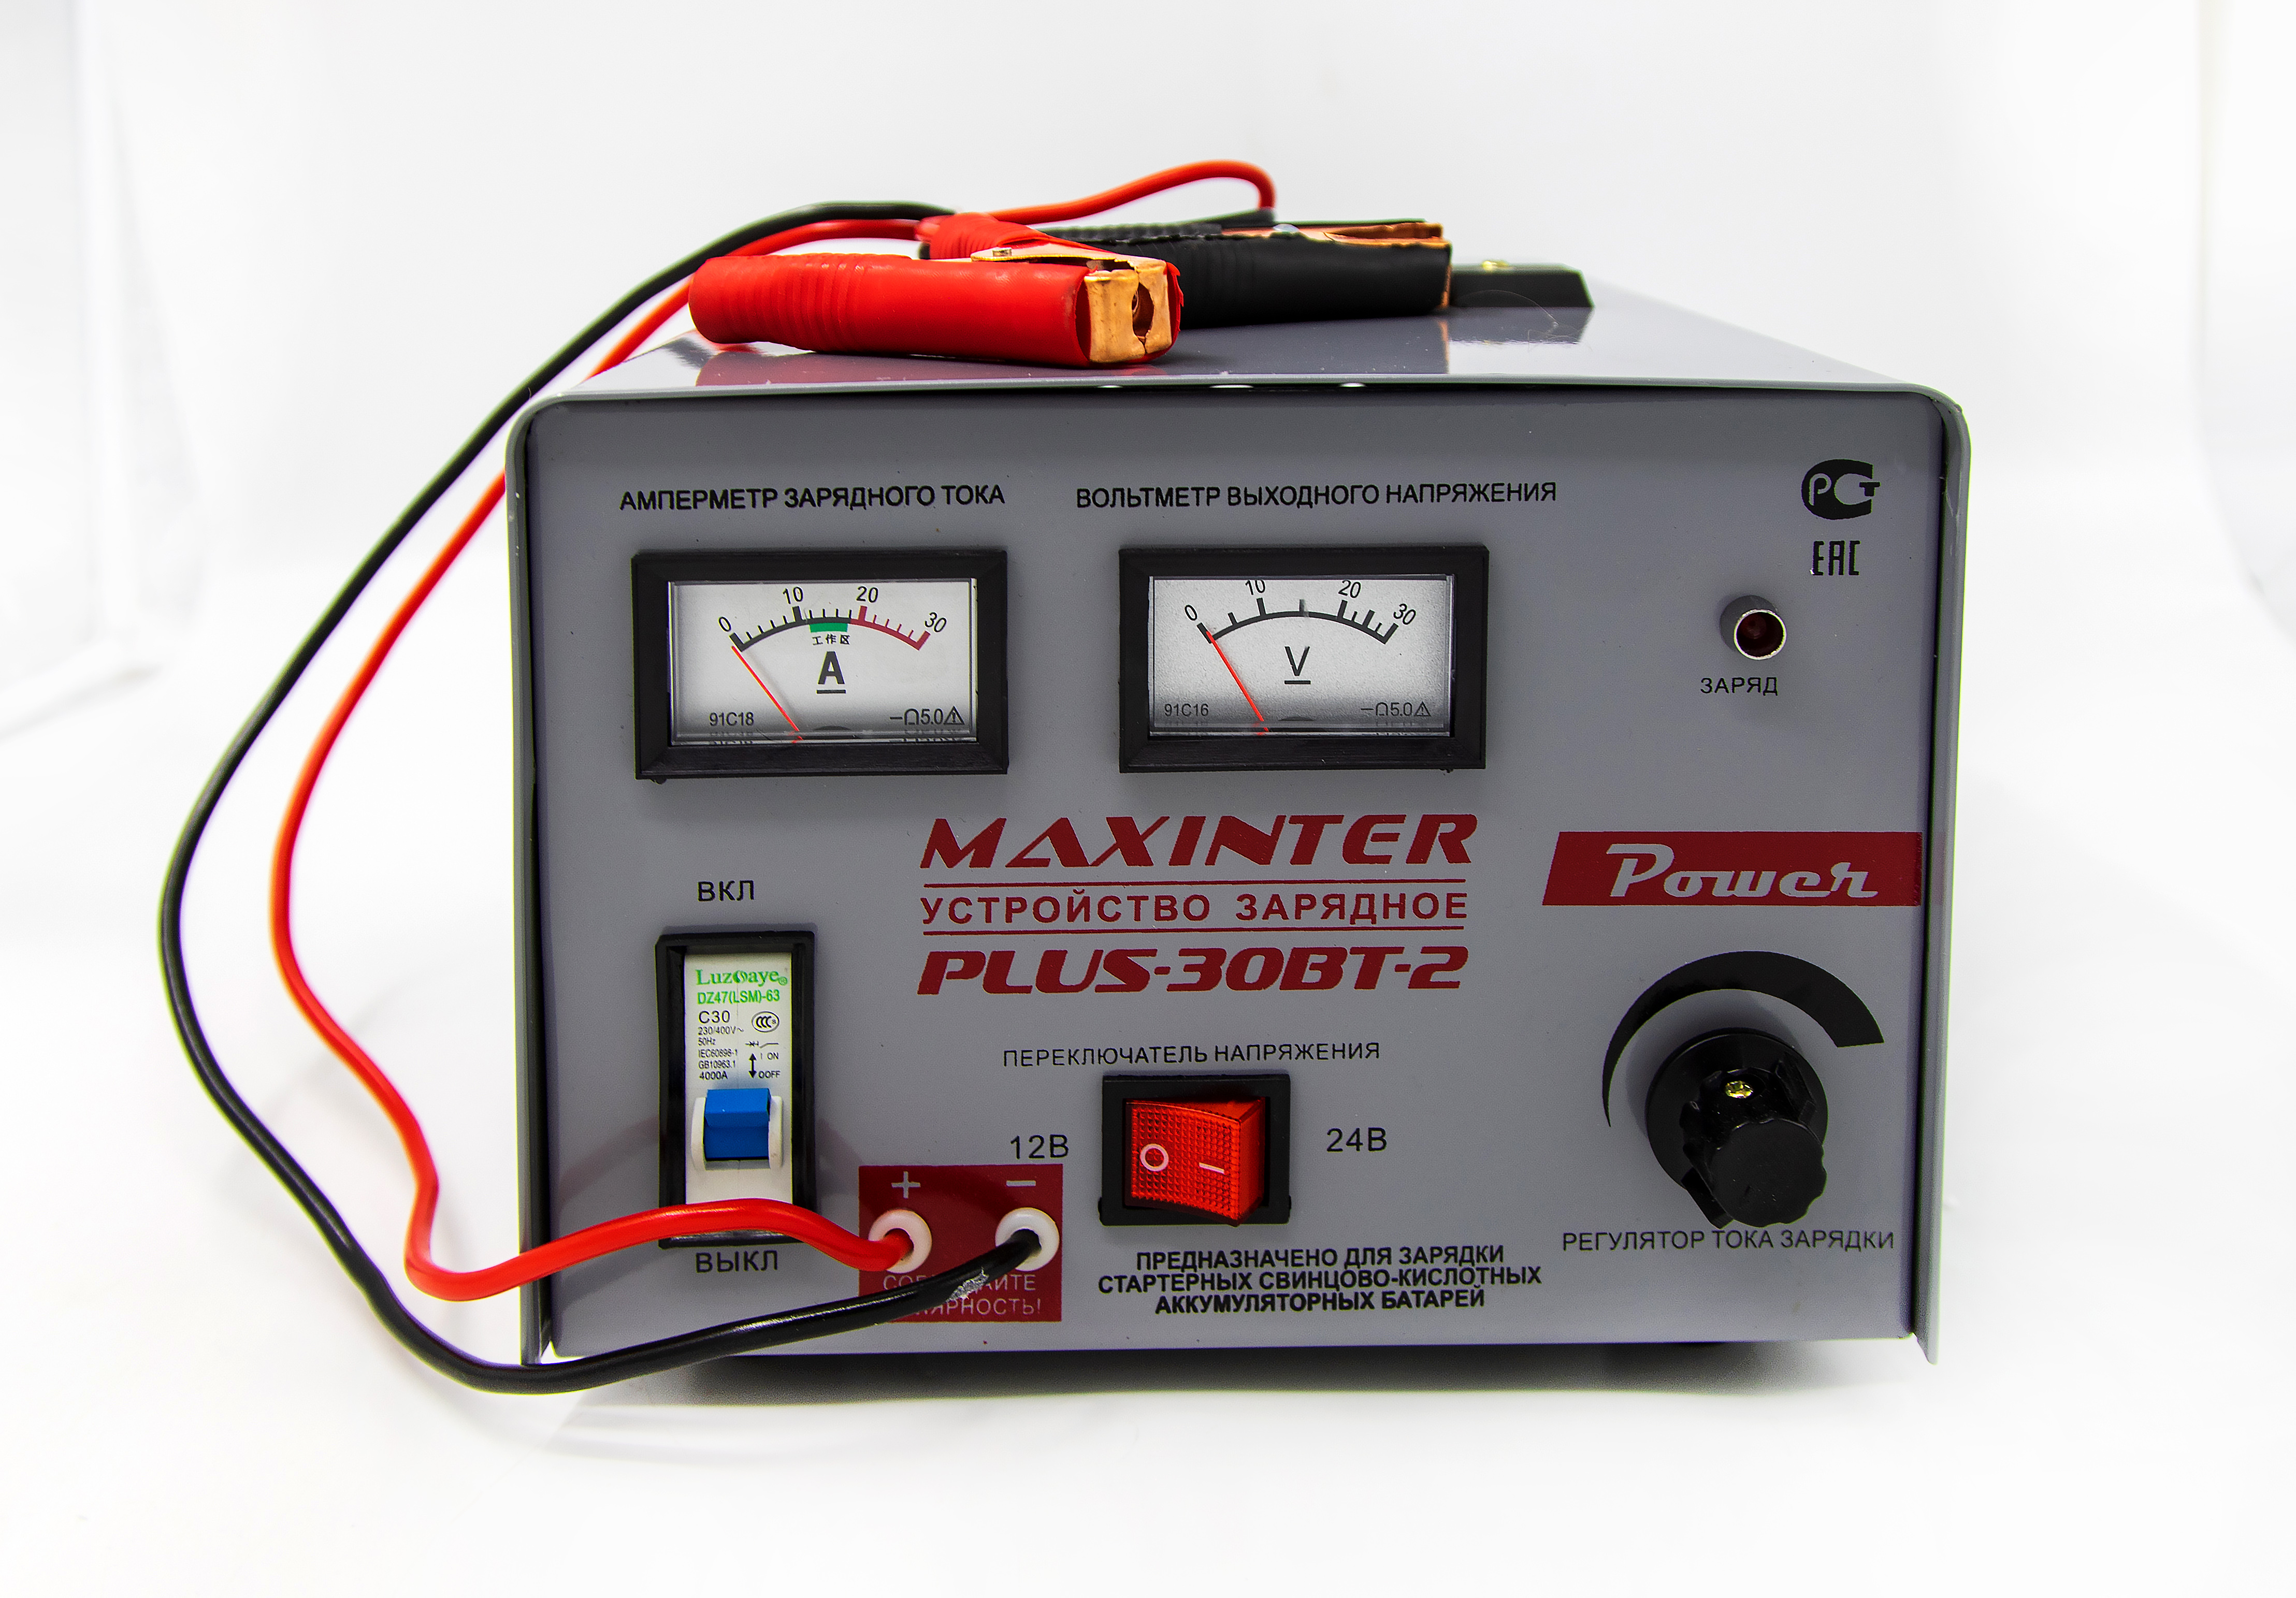 Максинтер зарядное. Зарядное устройство Maxinter Plus-30 BT-2. Maxinter Plus-30bt-2. Maxinter Plus-30 BT-2 Power, 12в/24в. Maxinter Plus-30 BT-11.